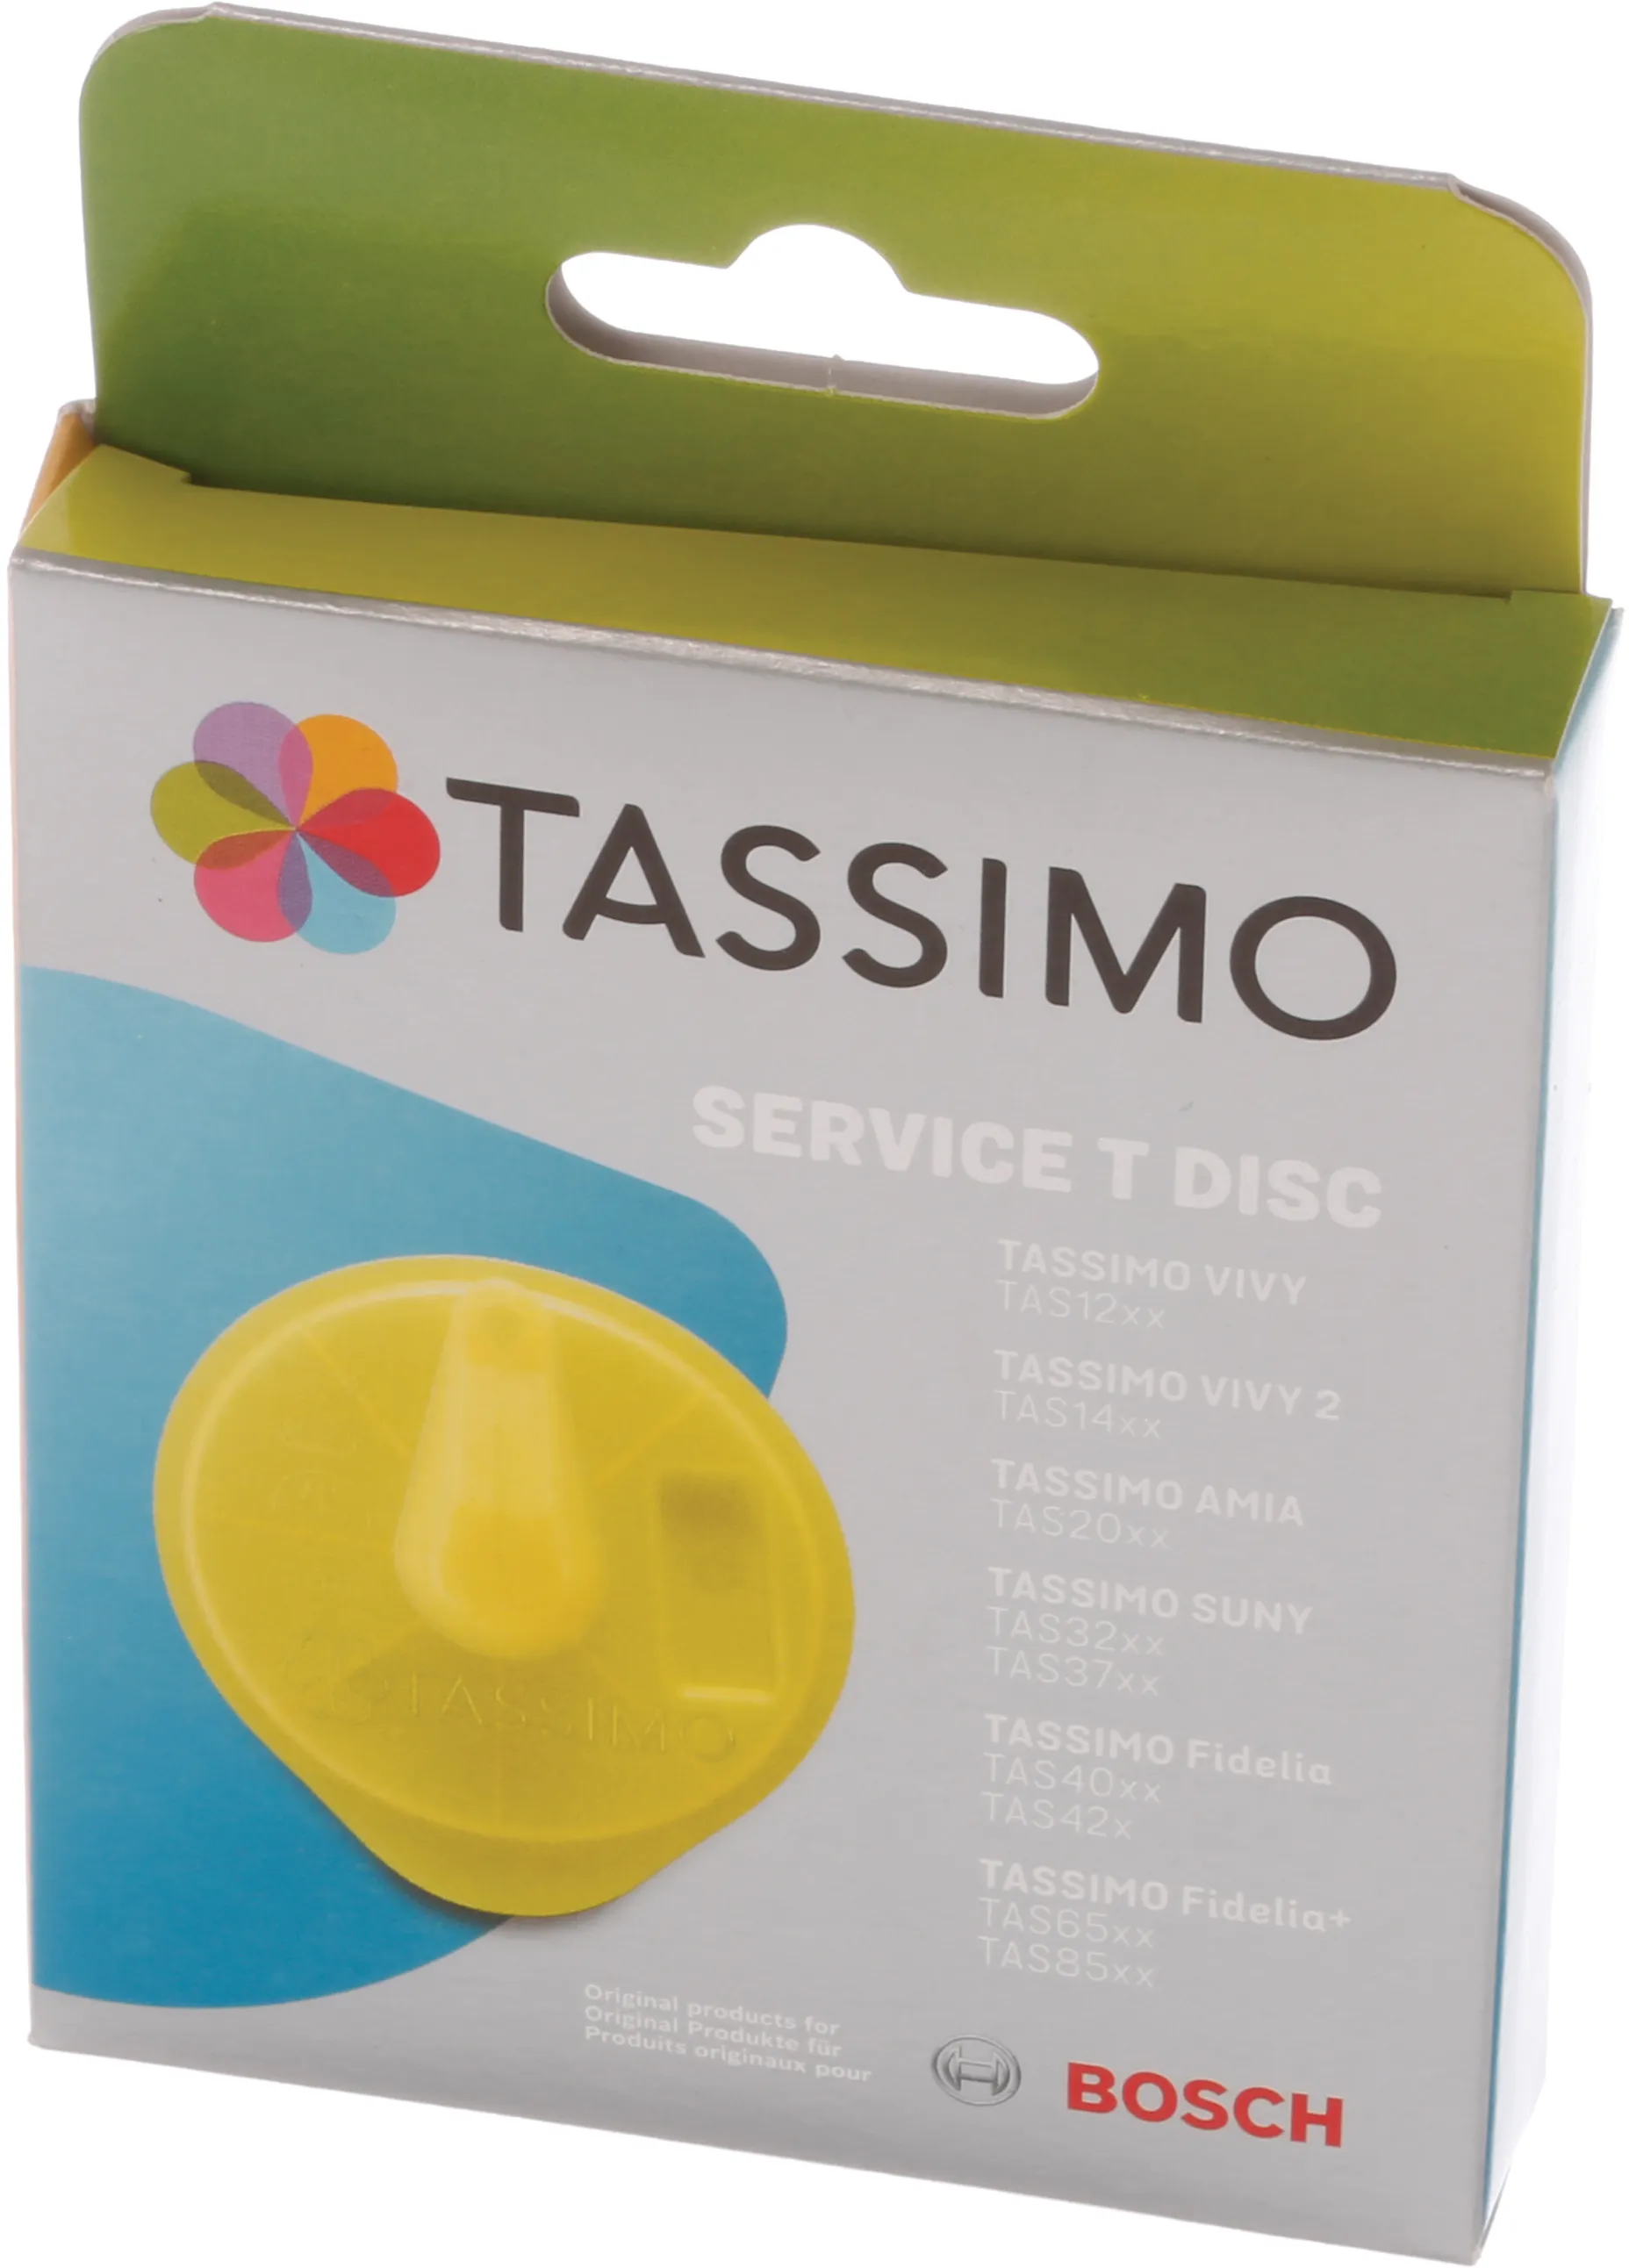 Bosch Service-disco T para TASSIMO yellow  00576836/00611632/00617771/00621101, agente descalcificador para el hogar y  la cocina, quitamanchas químico, productos químicos de limpieza,  Merchandises, jardín - AliExpress